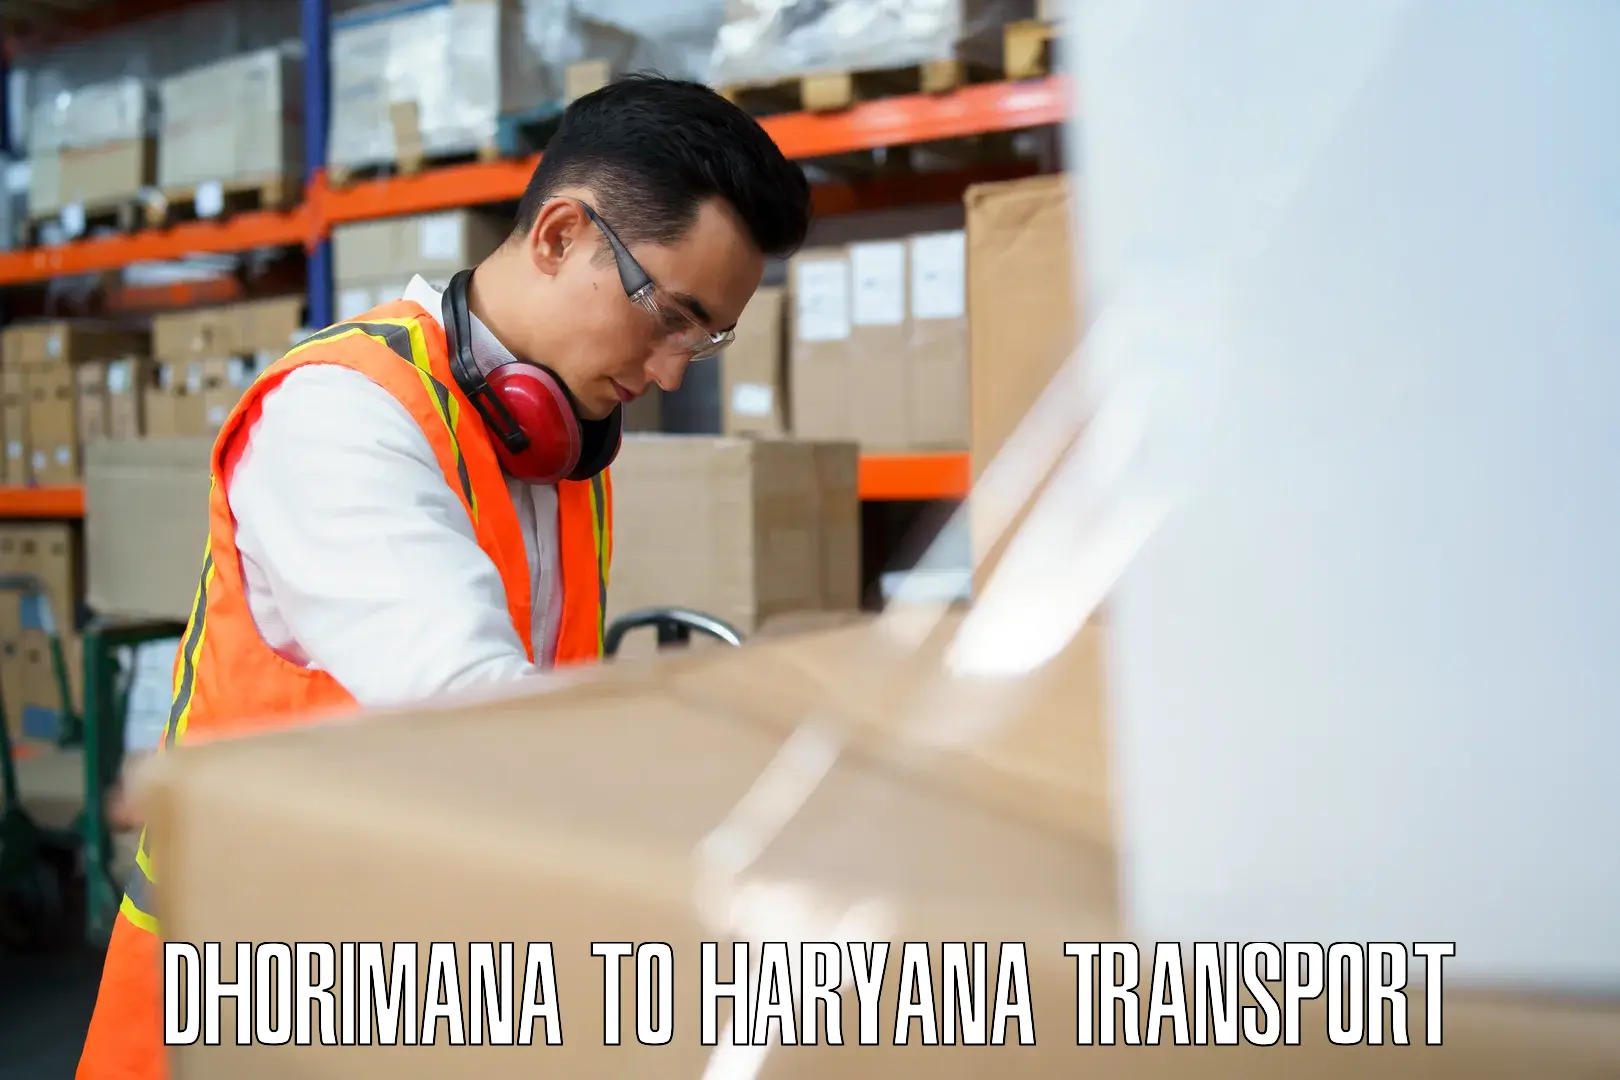 Vehicle transport services Dhorimana to Chirya